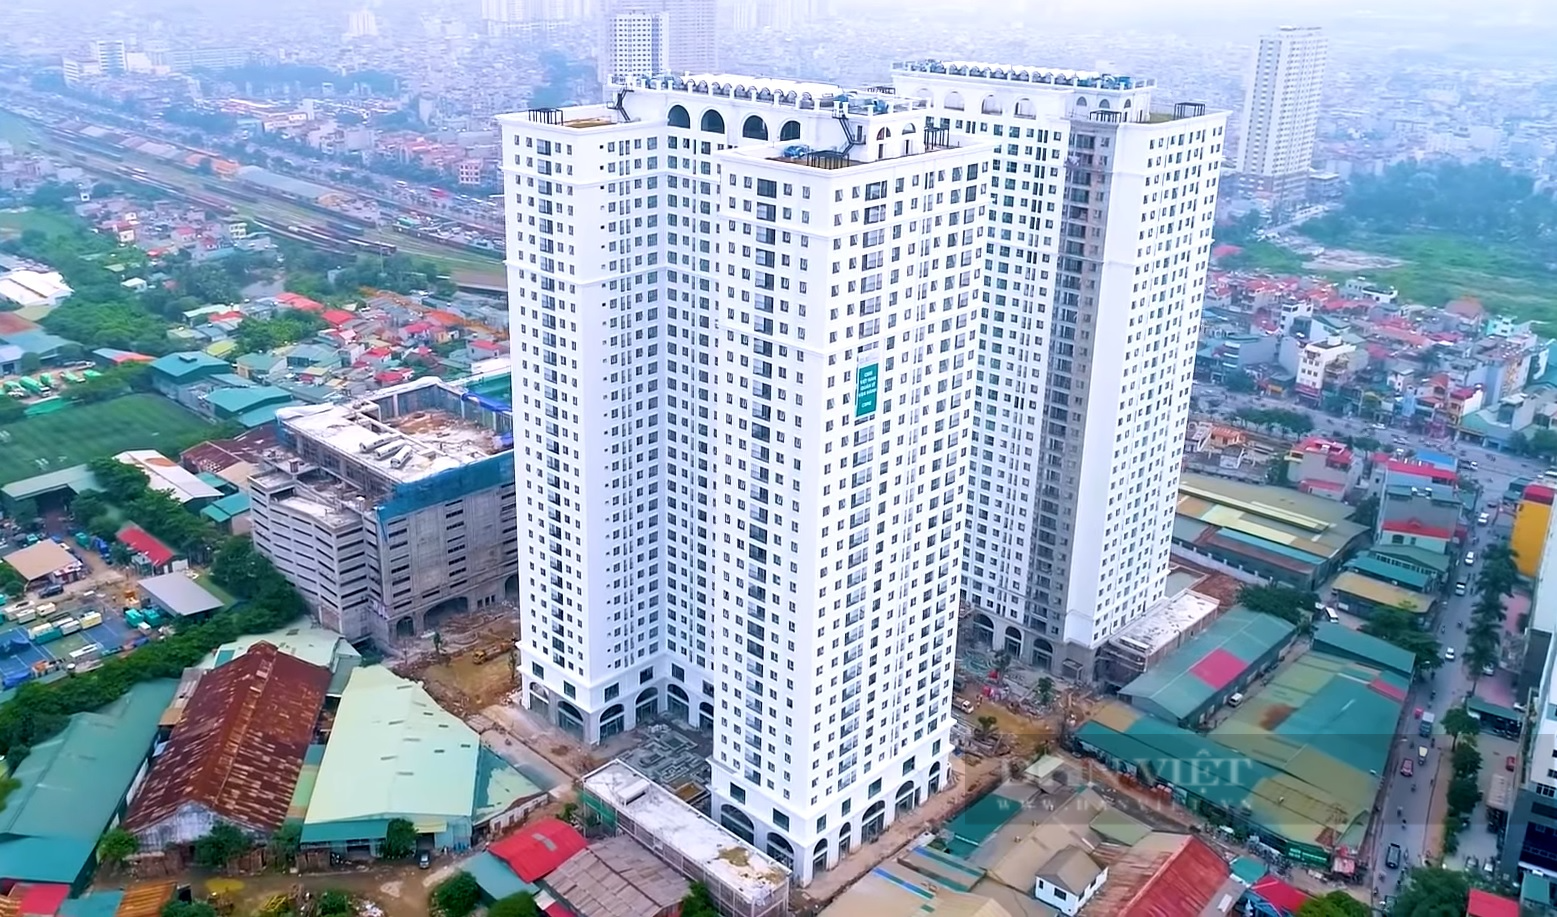 Đấu giá chung cư tại nội thành Hà Nội, giá khởi điểm chỉ từ 31 triệu đồng/m2 - Ảnh 1.